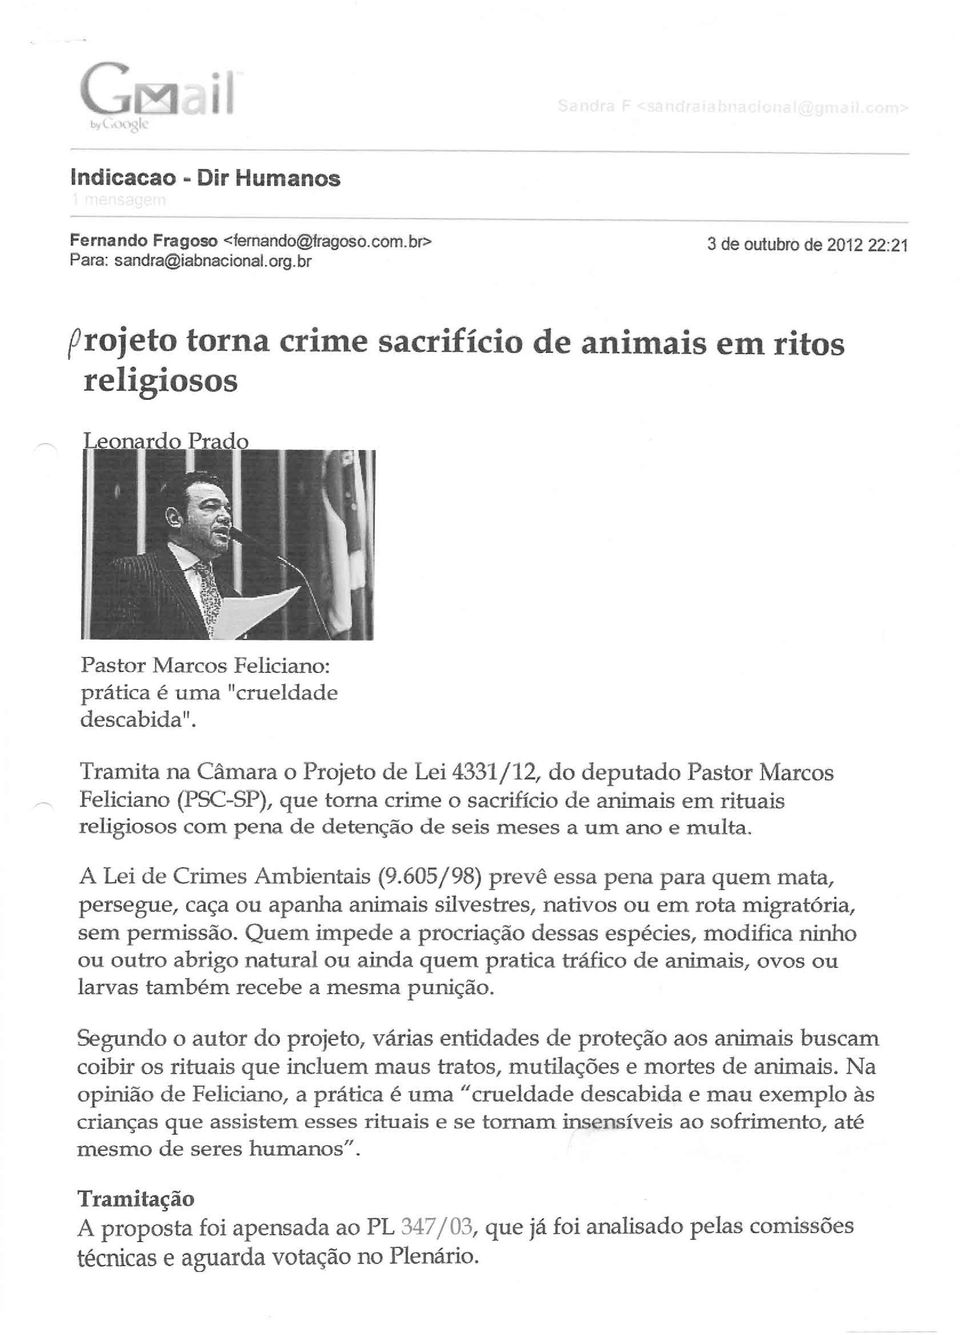 Tramita na Câmara o Projeto de Lei 4331/12, do deputado Pastor Marcos Feliciano (PSC-SP), que torna crime o sacrifício de animais em rituais religiosos com pena de detenção de seis meses a um ano e